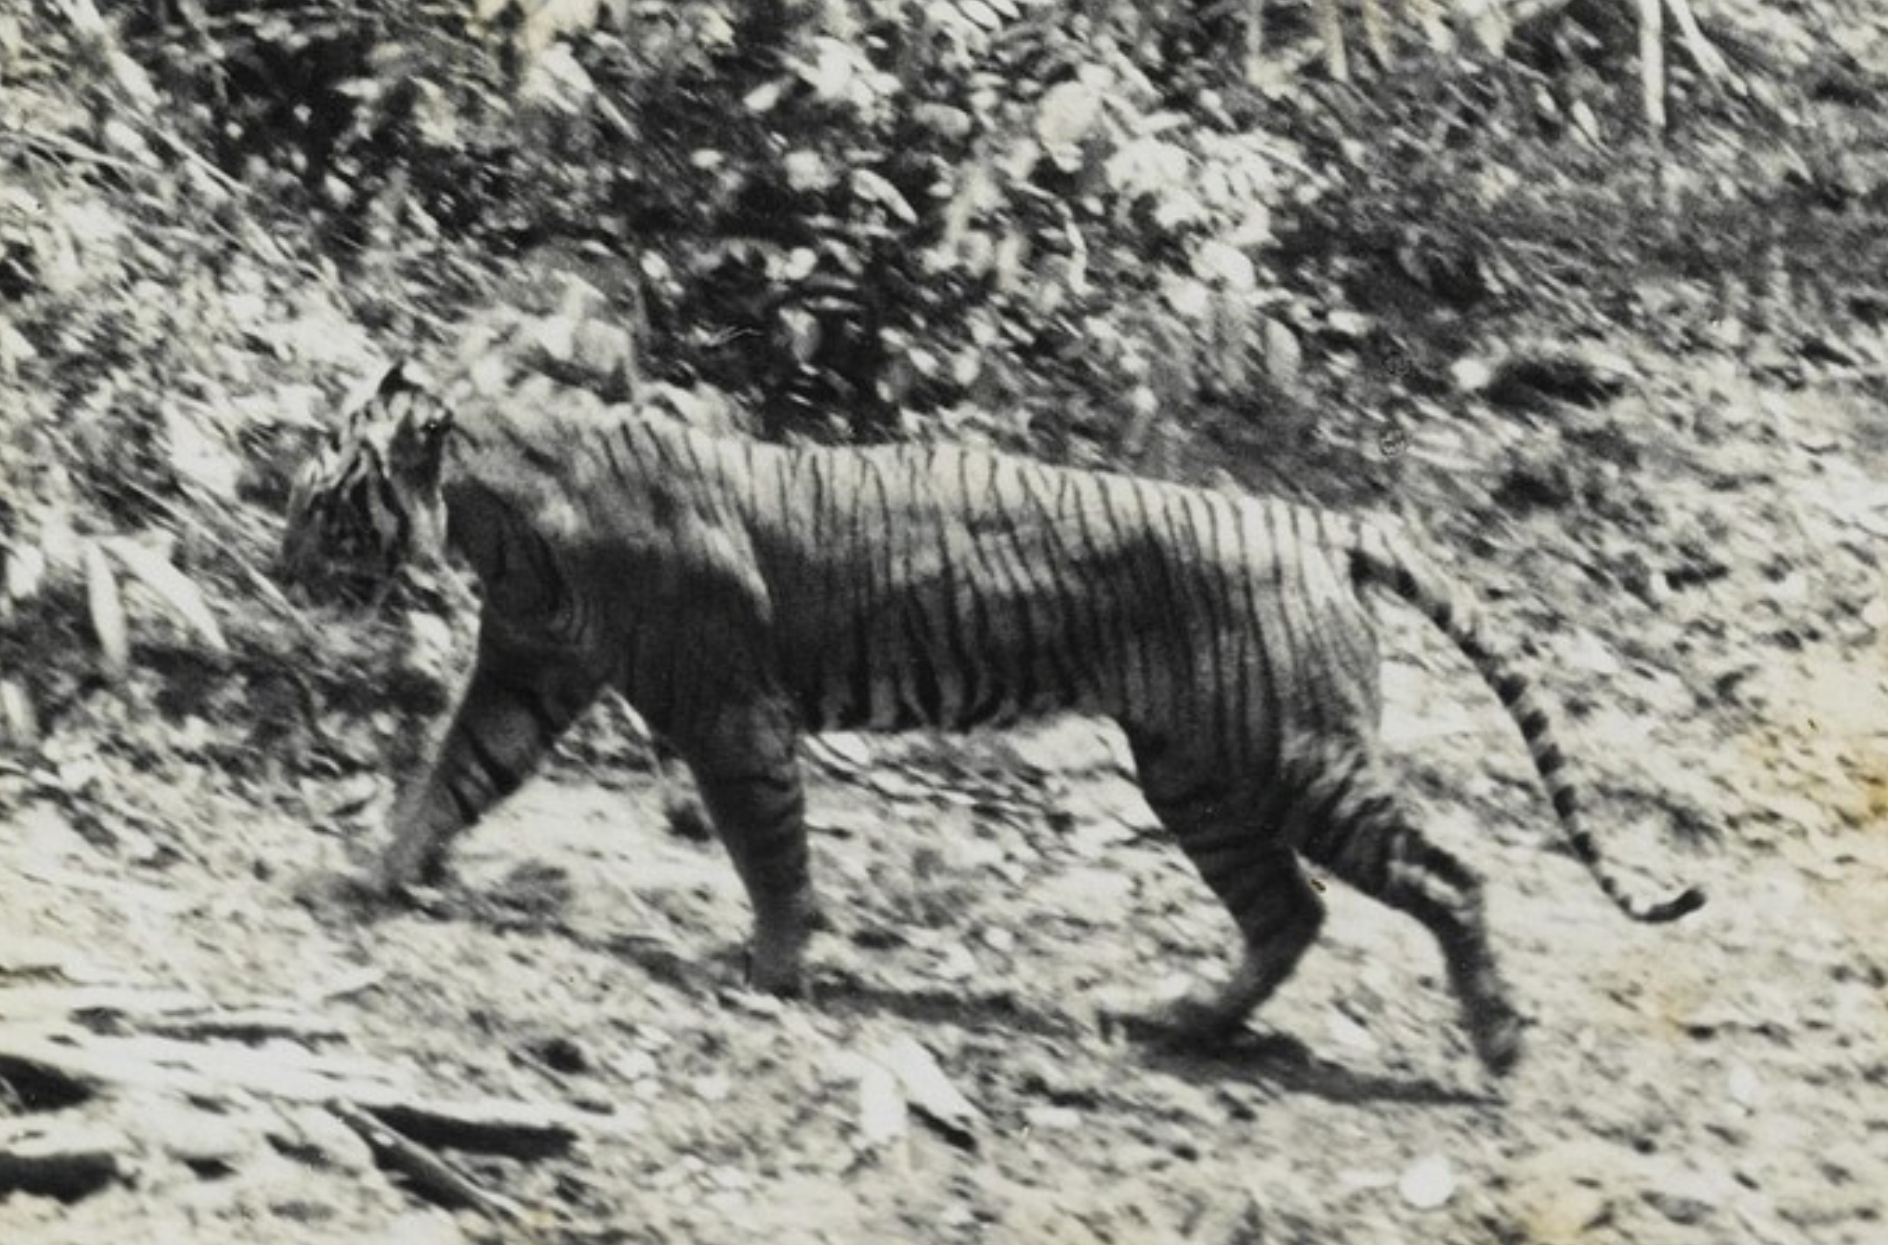 Mungkinkah Harimau Jawa Selamat dari Kepunahan? Kesaksian Warga di Kuningan Tahun 2016 Masih Ada